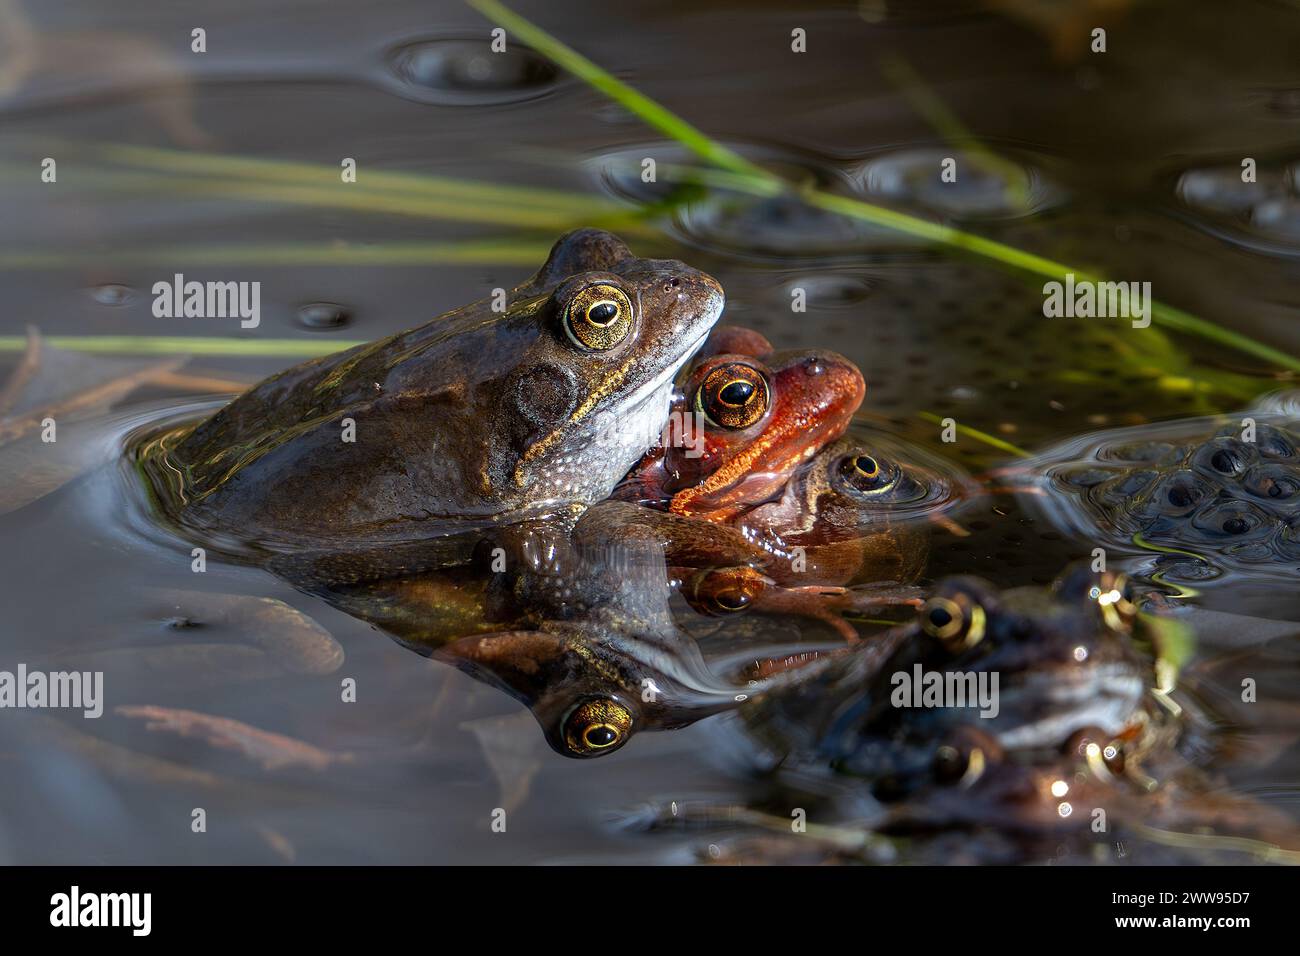 Ranas pardas comunes europeas (Rana temporaria) en amplexus que se reúnen en el estanque entre los engendros de ranas durante la temporada de apareamiento y desove en primavera Foto de stock